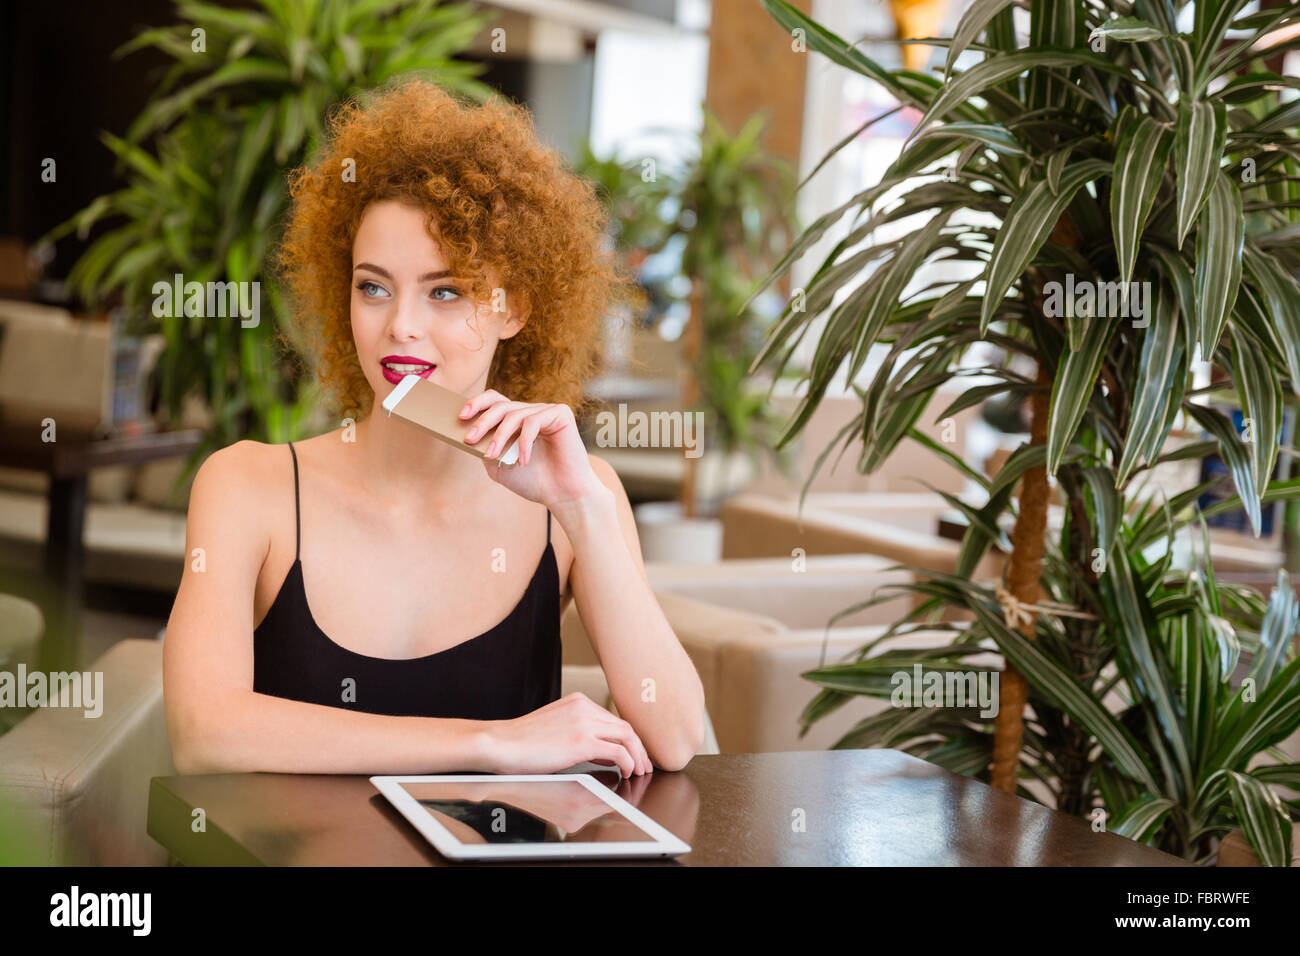 Portrait d'une femme rousse pensive avec des cheveux bouclés sitting in restaurant Banque D'Images